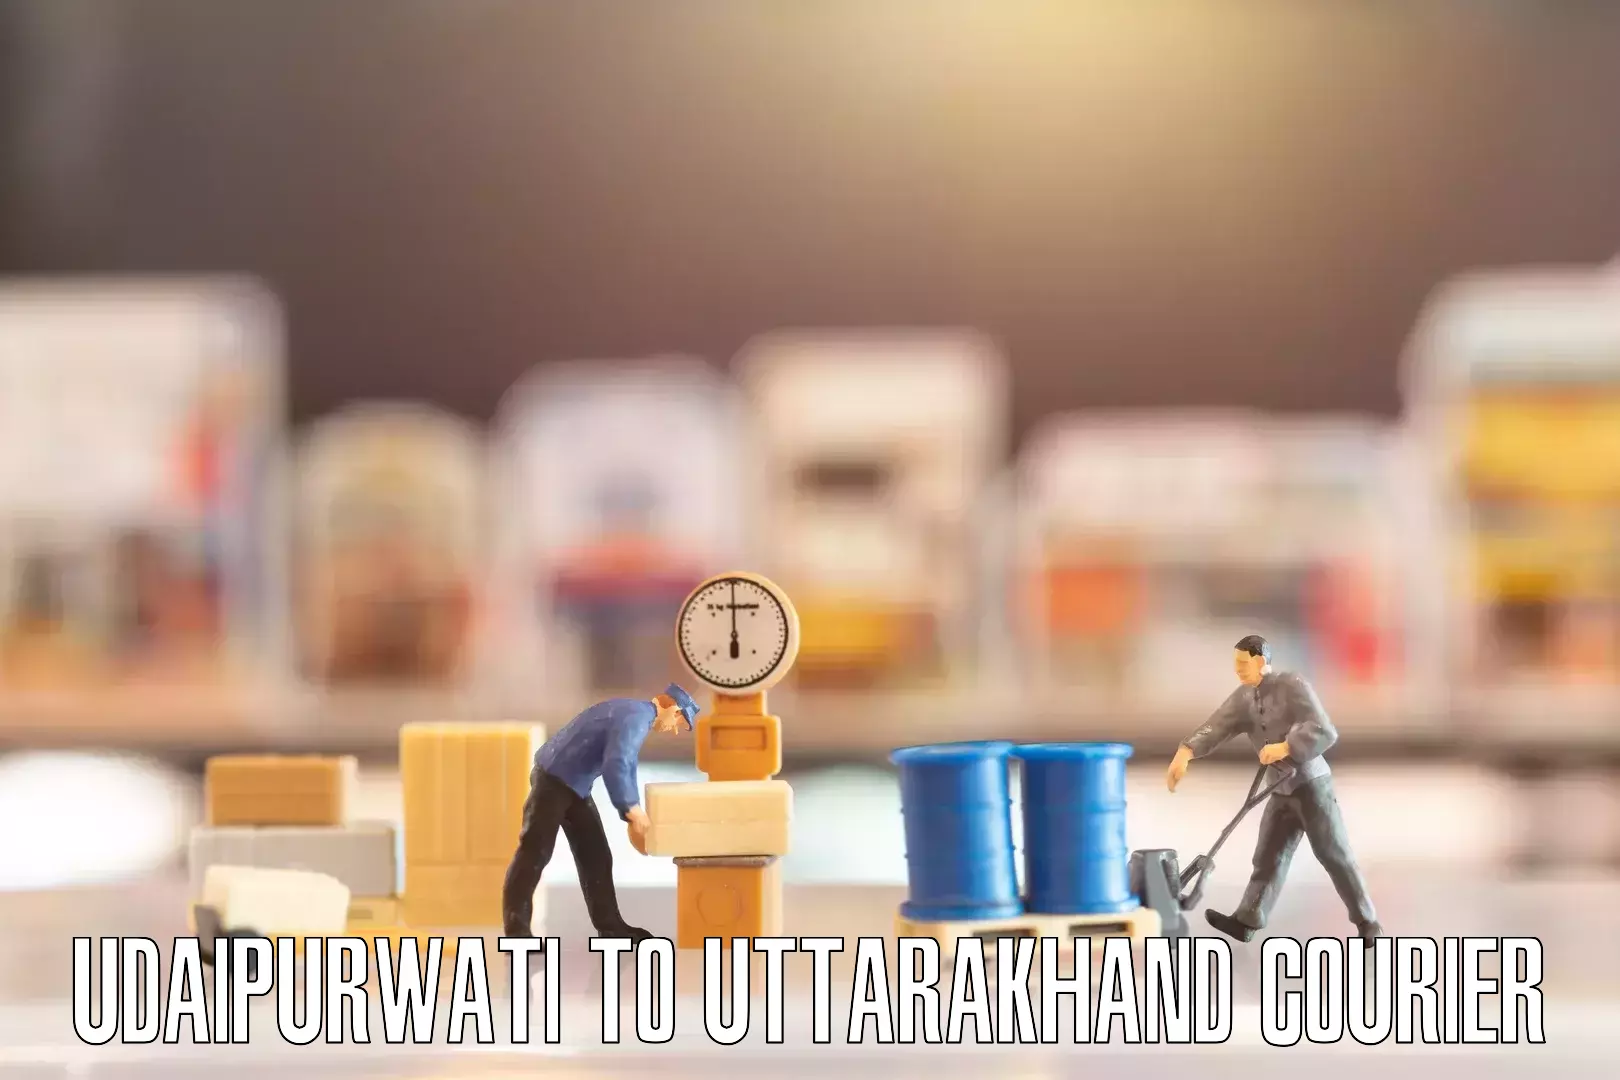 Professional moving company Udaipurwati to Uttarakhand